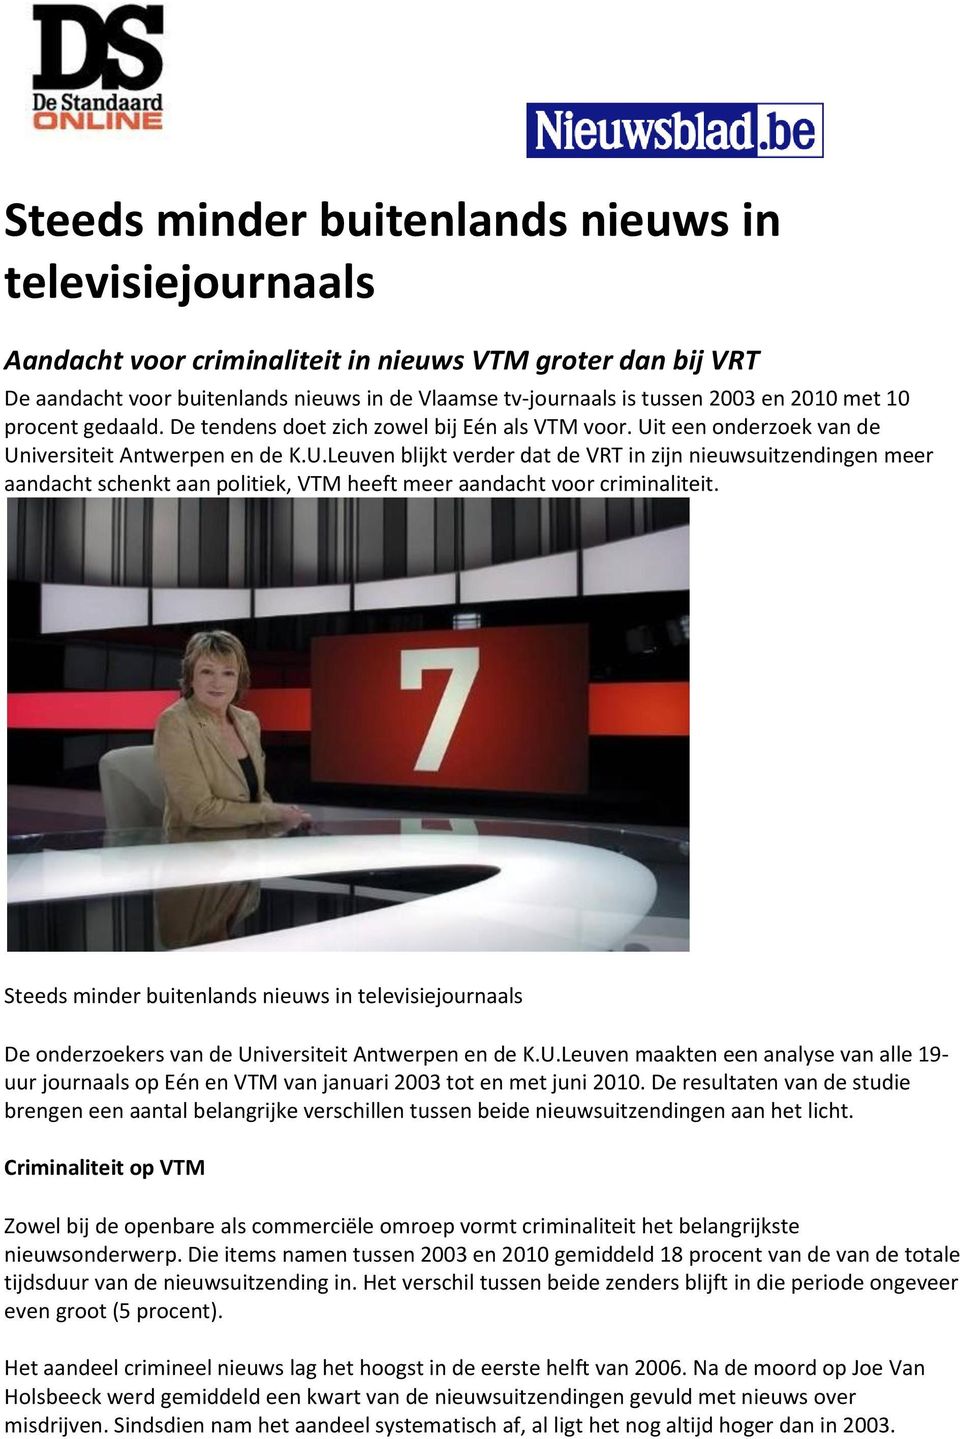 t een onderzoek van de Universiteit Antwerpen en de K.U.Leuven blijkt verder dat de VRT in zijn nieuwsuitzendingen meer aandacht schenkt aan politiek, VTM heeft meer aandacht voor criminaliteit.